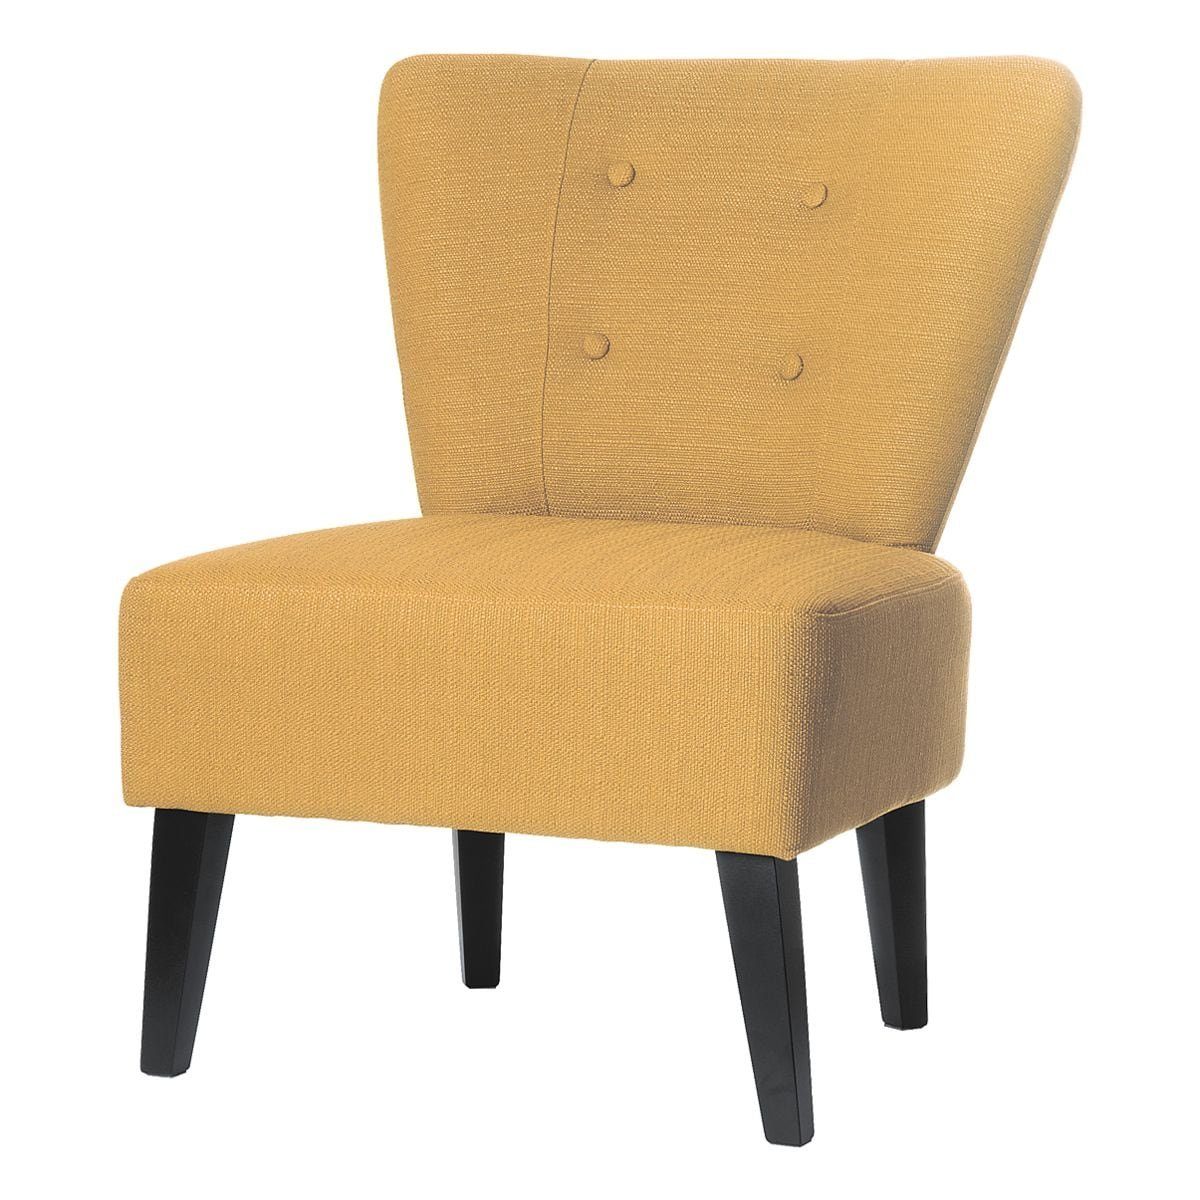 PAPERFLOW Sessel Brighton, im Vintage-Look, extrabreite Sitzfläche, Holzfüße Safran